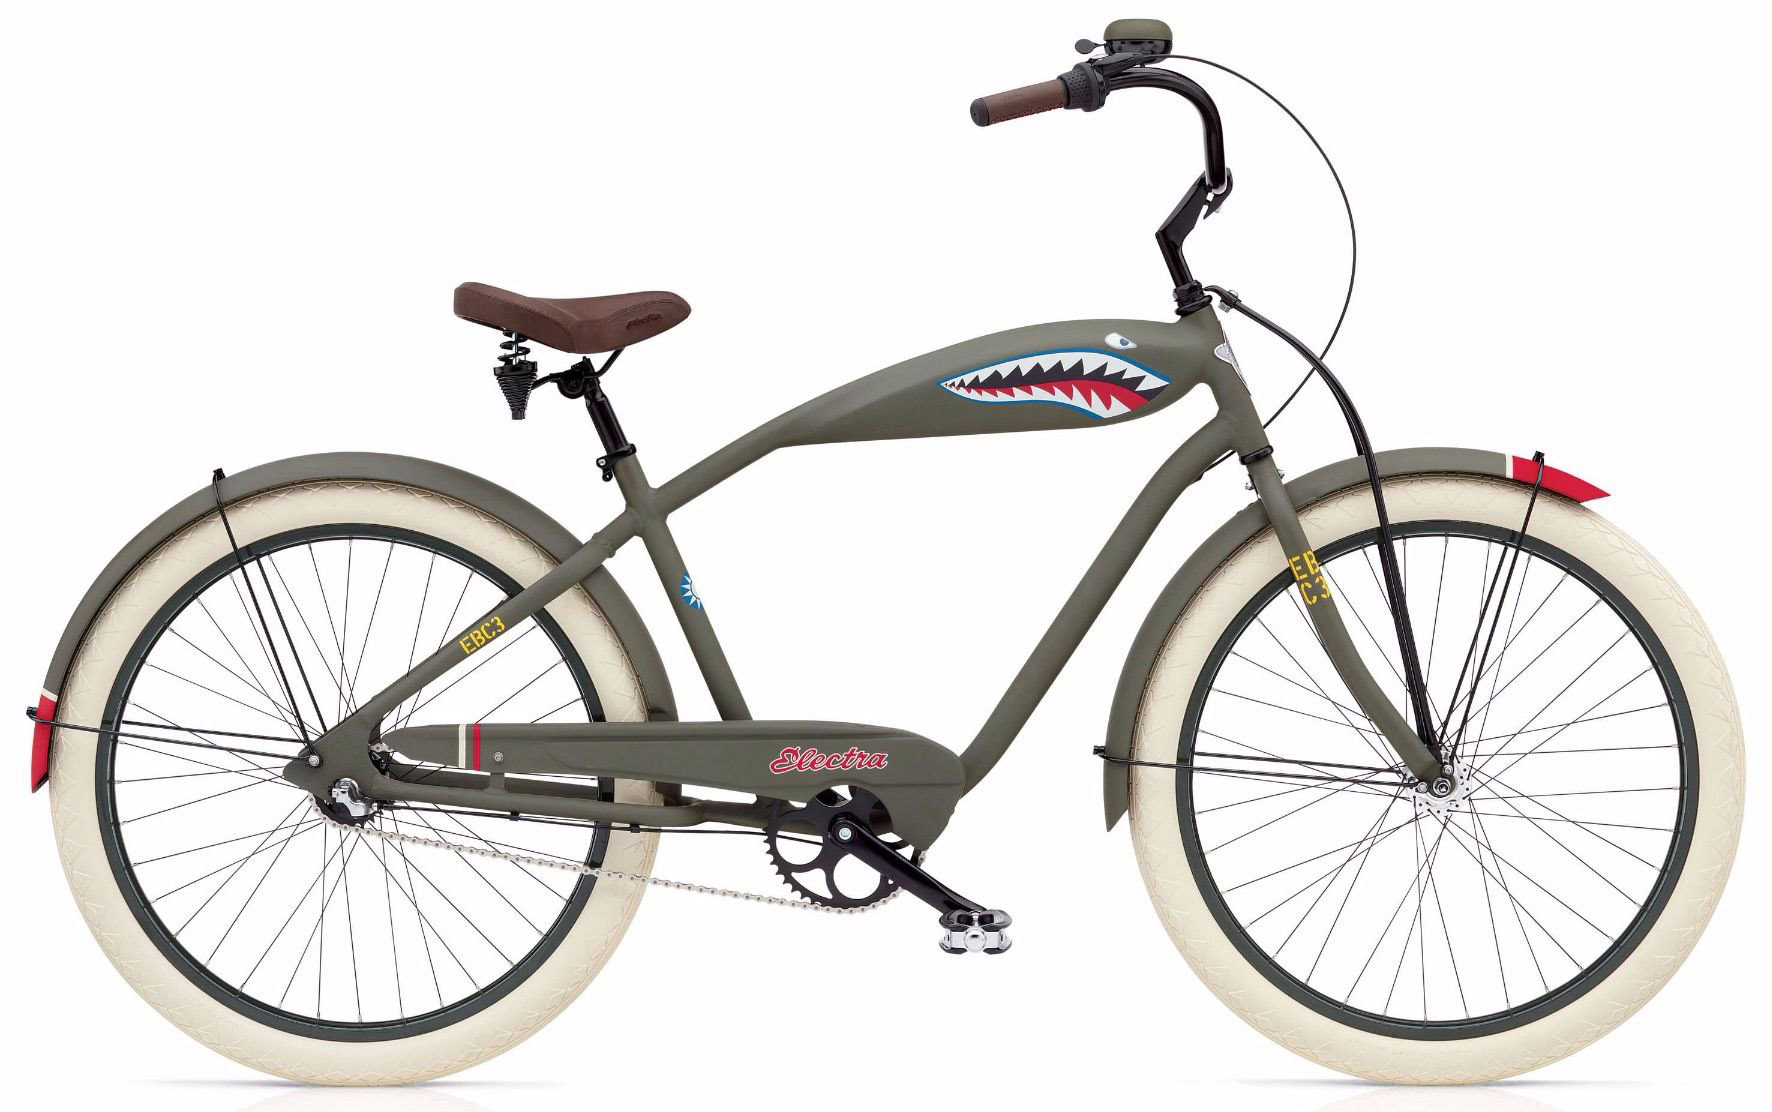  Отзывы о Городском велосипеде Electra Tiger Shark 3i 2020